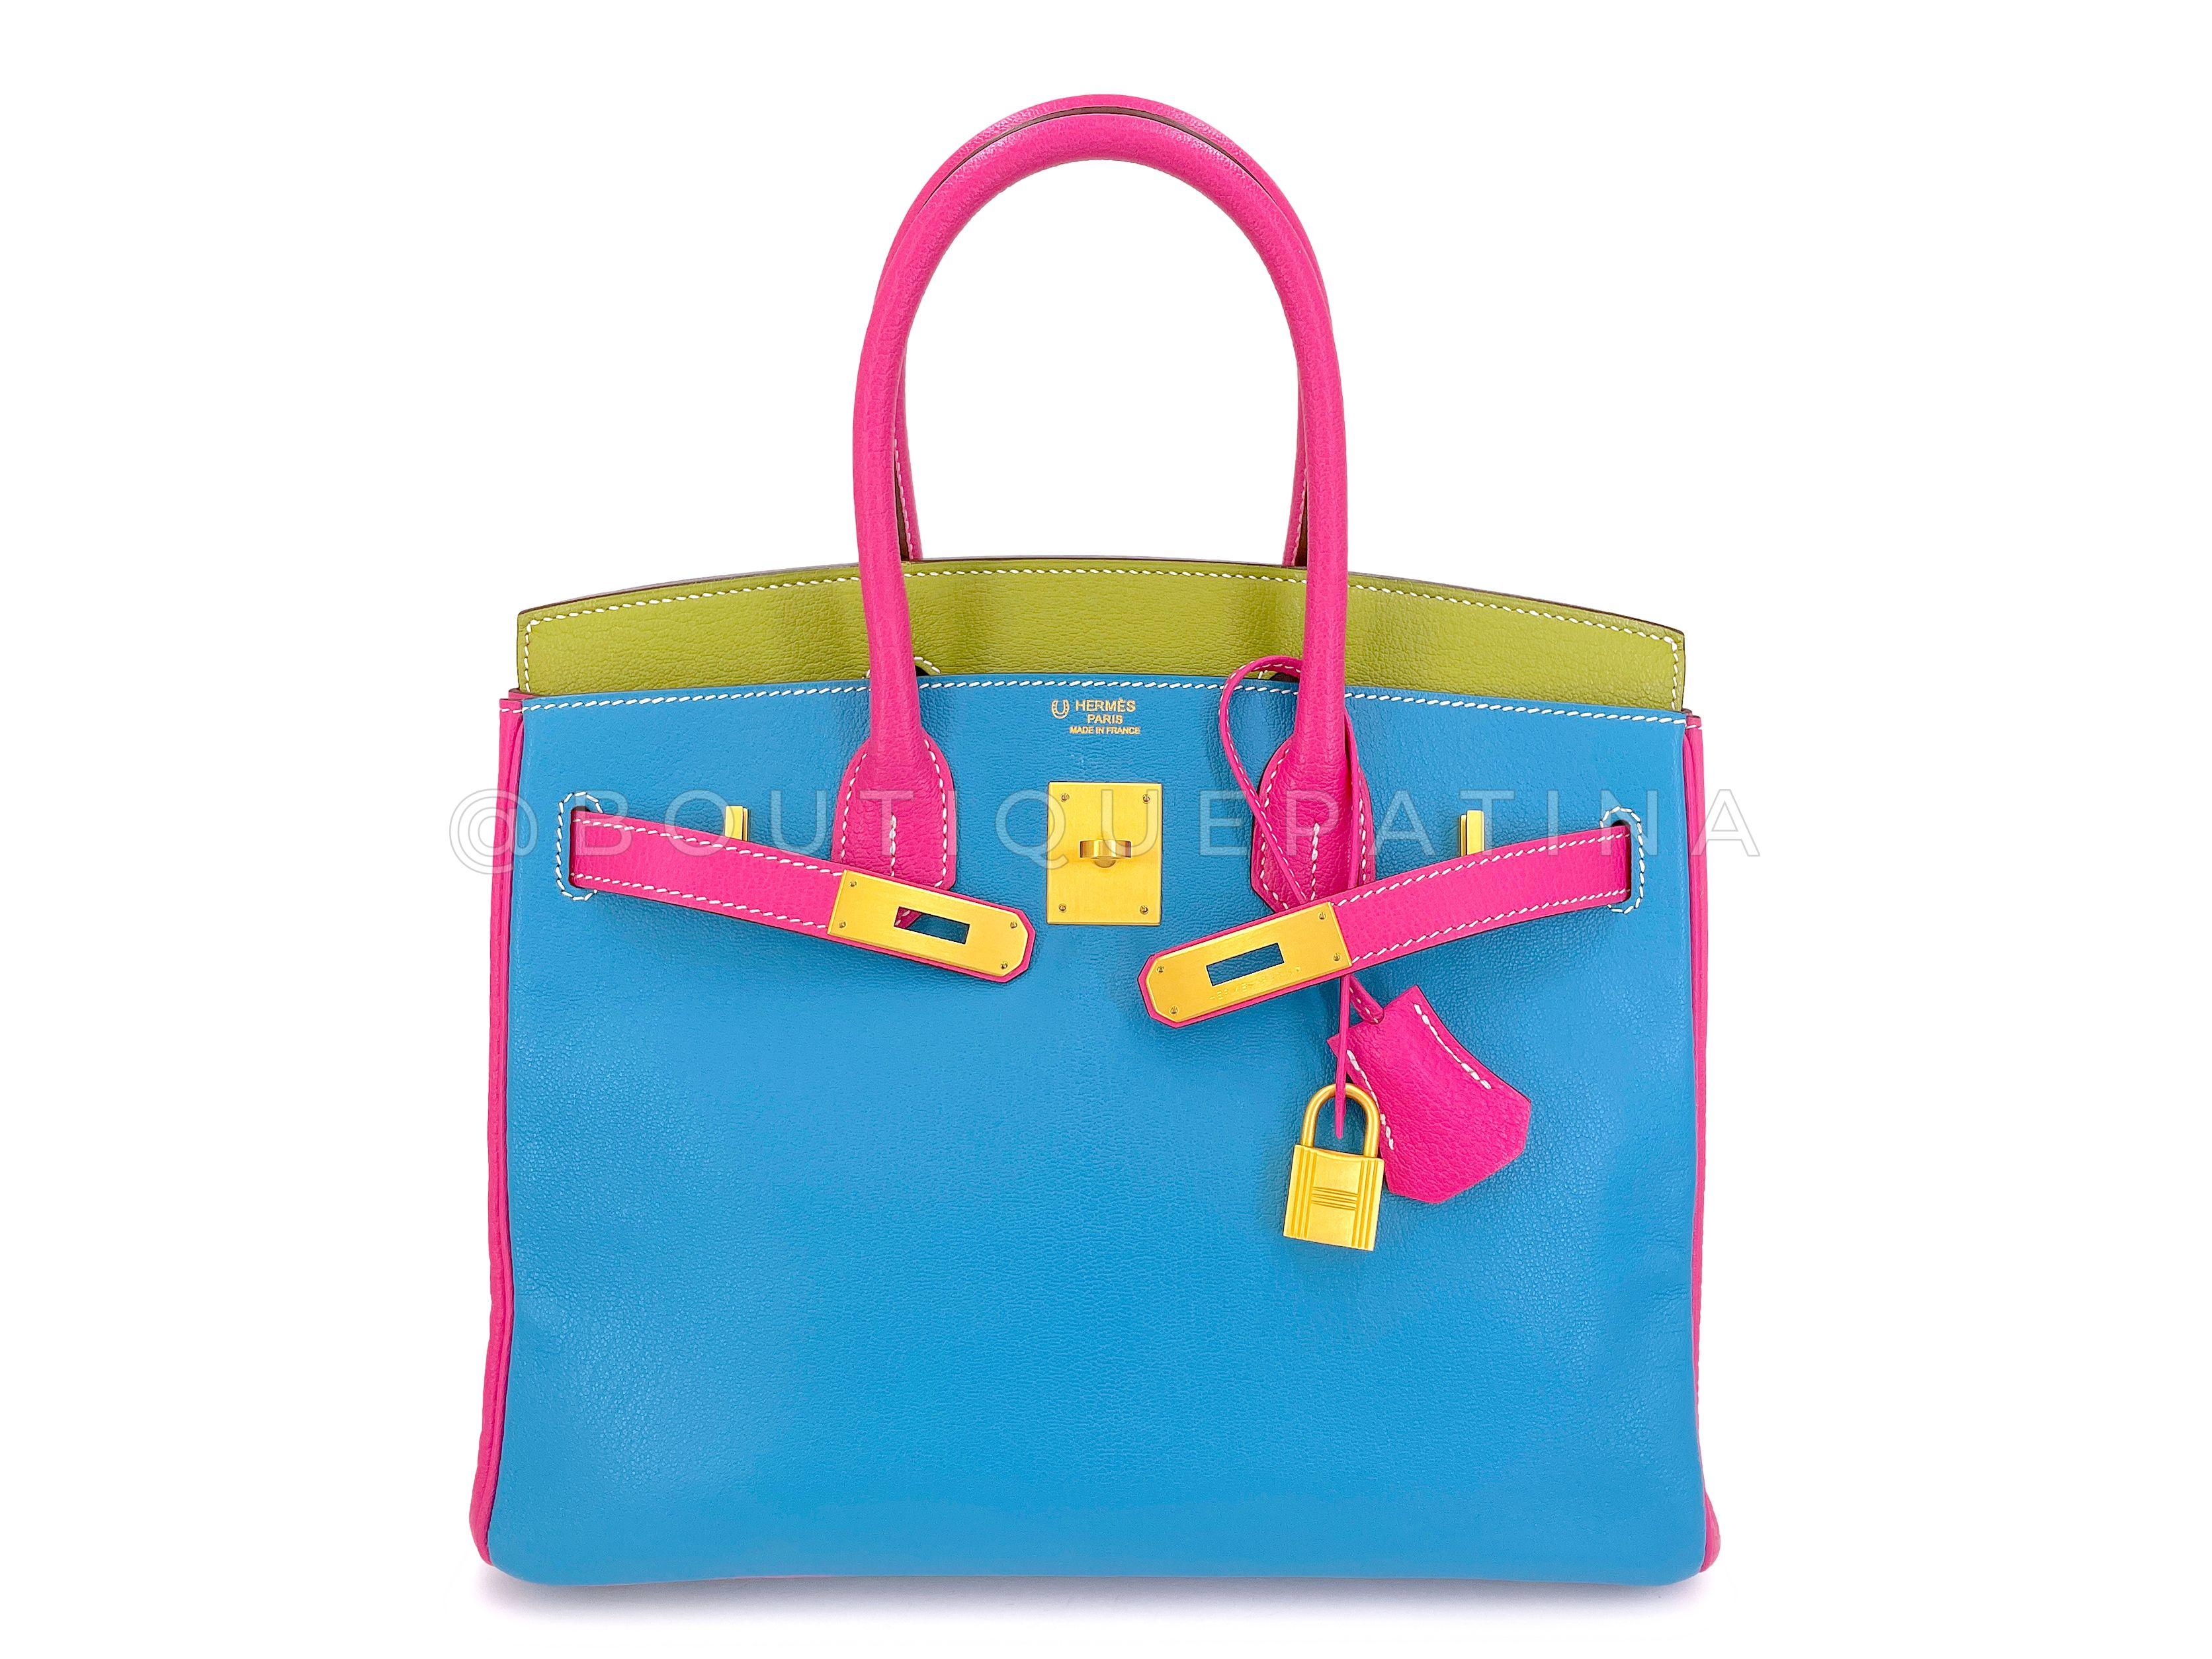 Hermès Special Order Chèvre 30cm Birkin Brushed Gold Pink Green Blue Bag 68121 For Sale 8